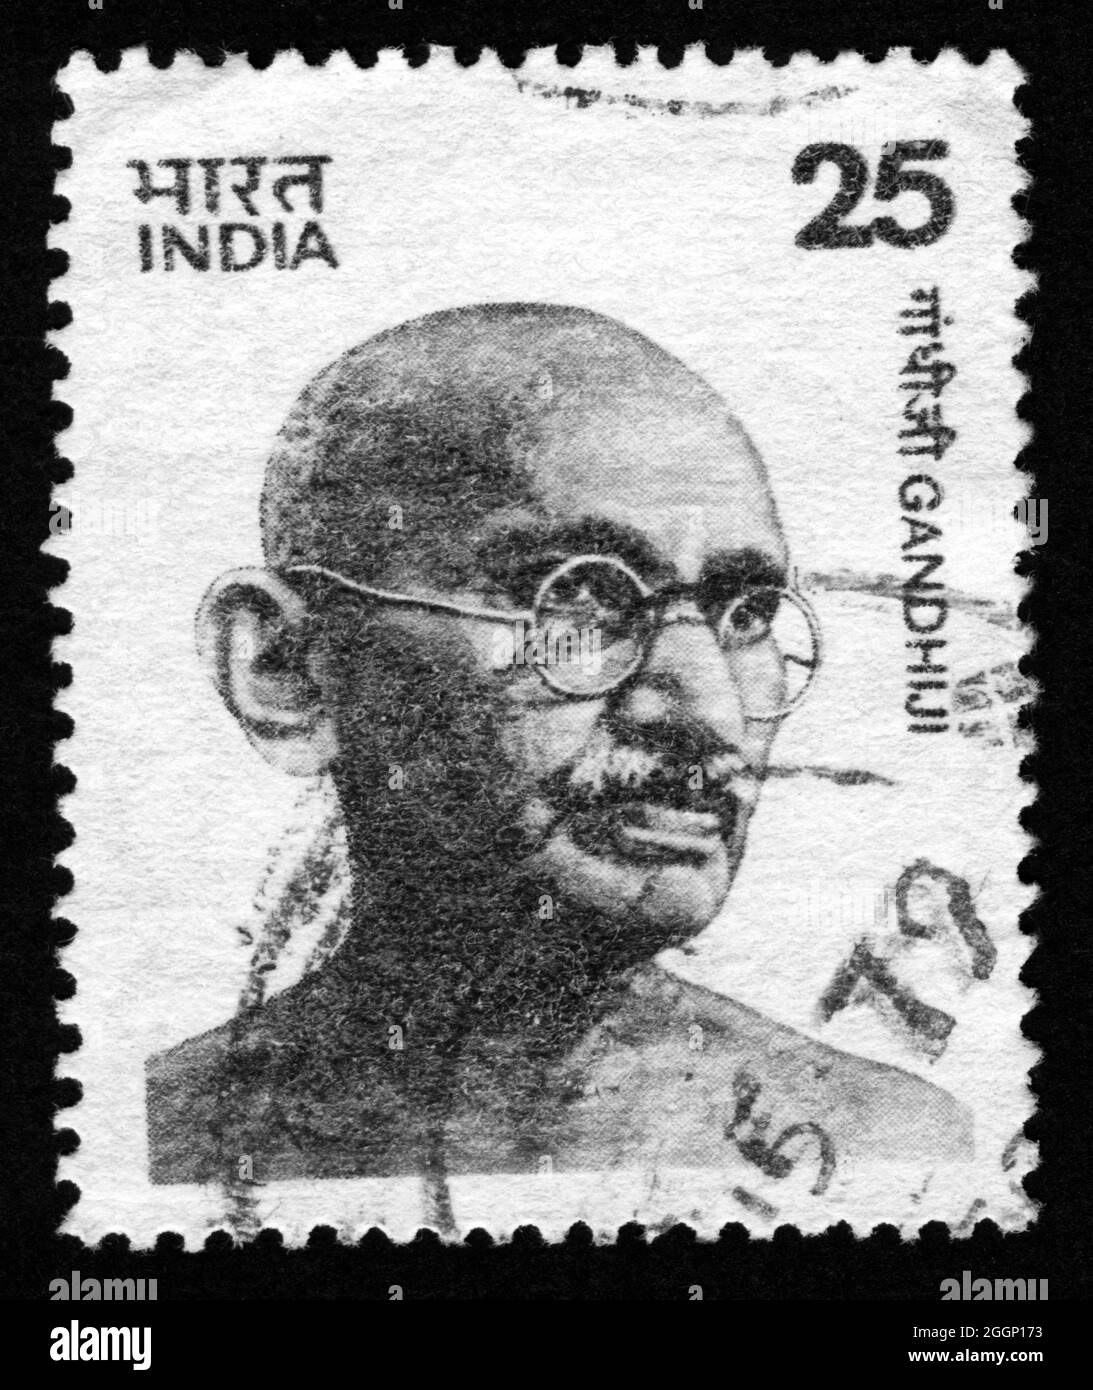 Impresión de sello en la India, Gandhi Foto de stock